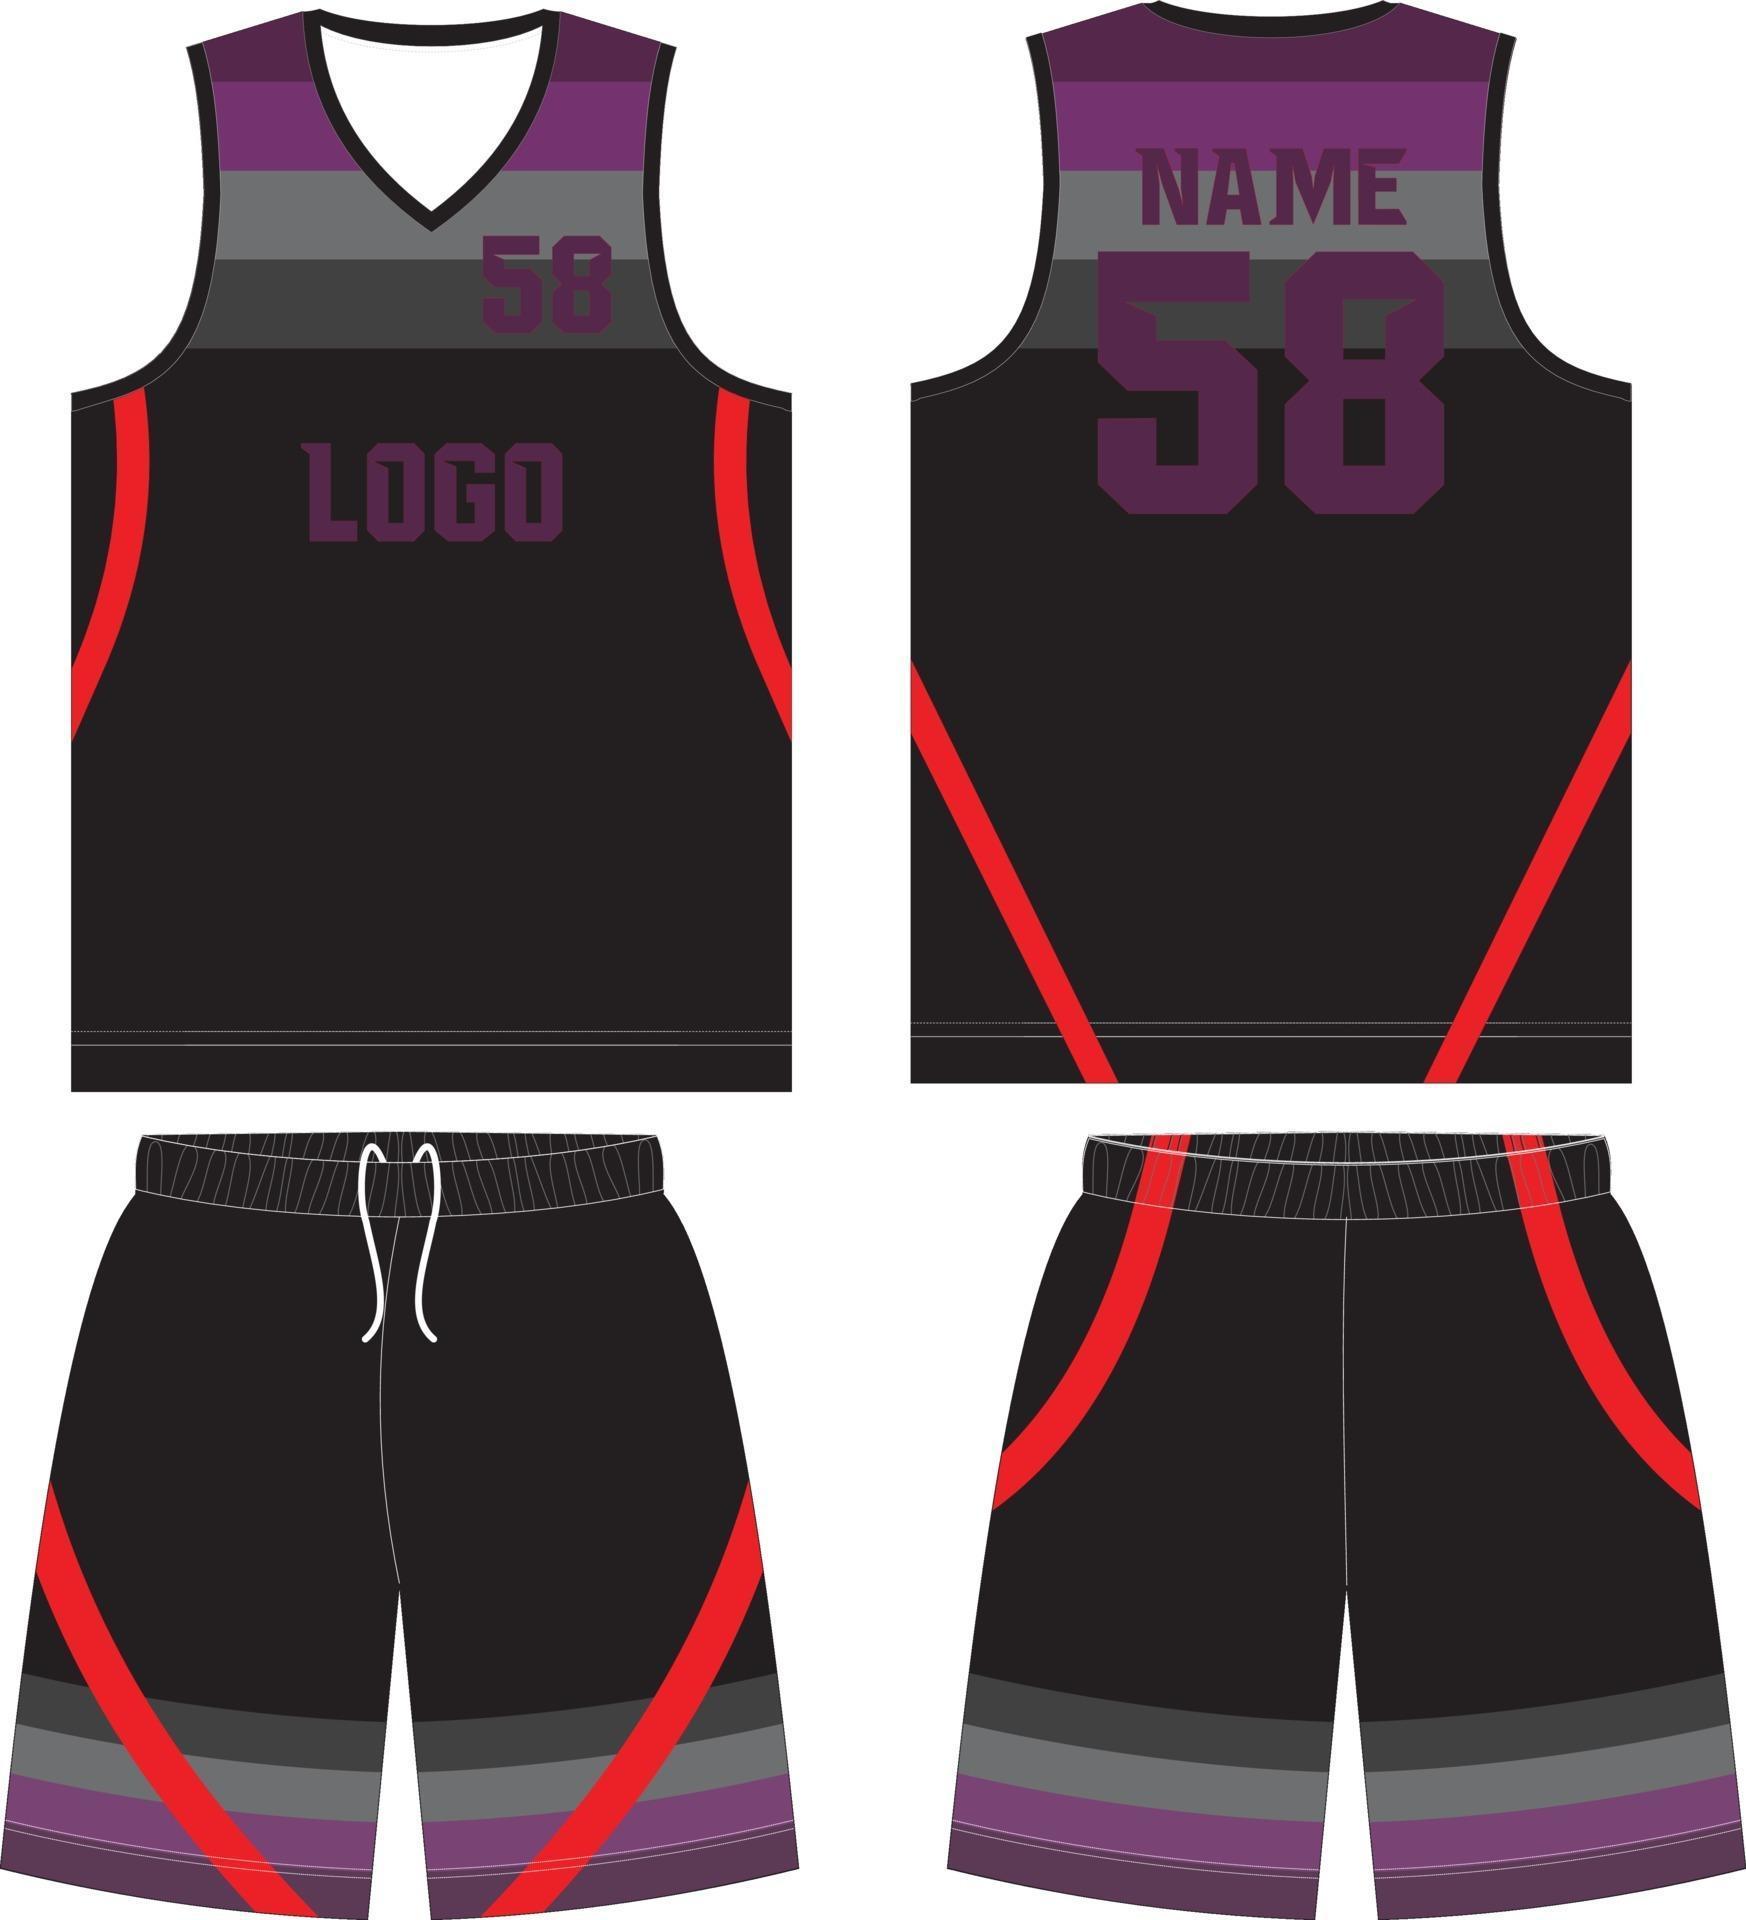 Basketball uniform Custom Design mock ups Download Free Vectors